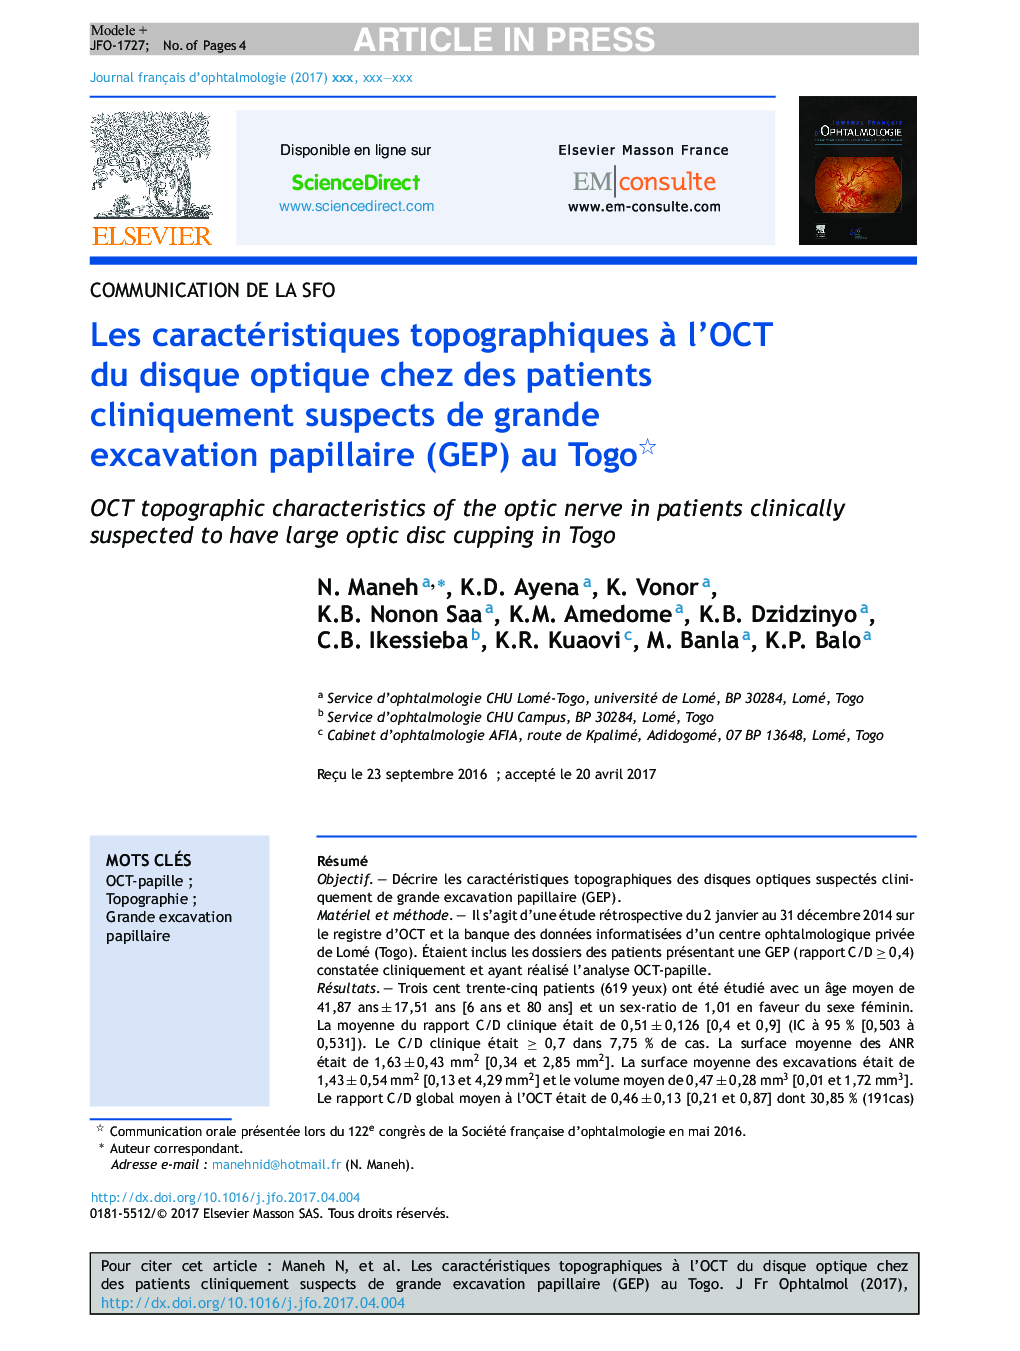 Les caractéristiques topographiques Ã  l'OCT du disque optique chez des patients cliniquement suspects de grande excavation papillaire (GEP) au Togo